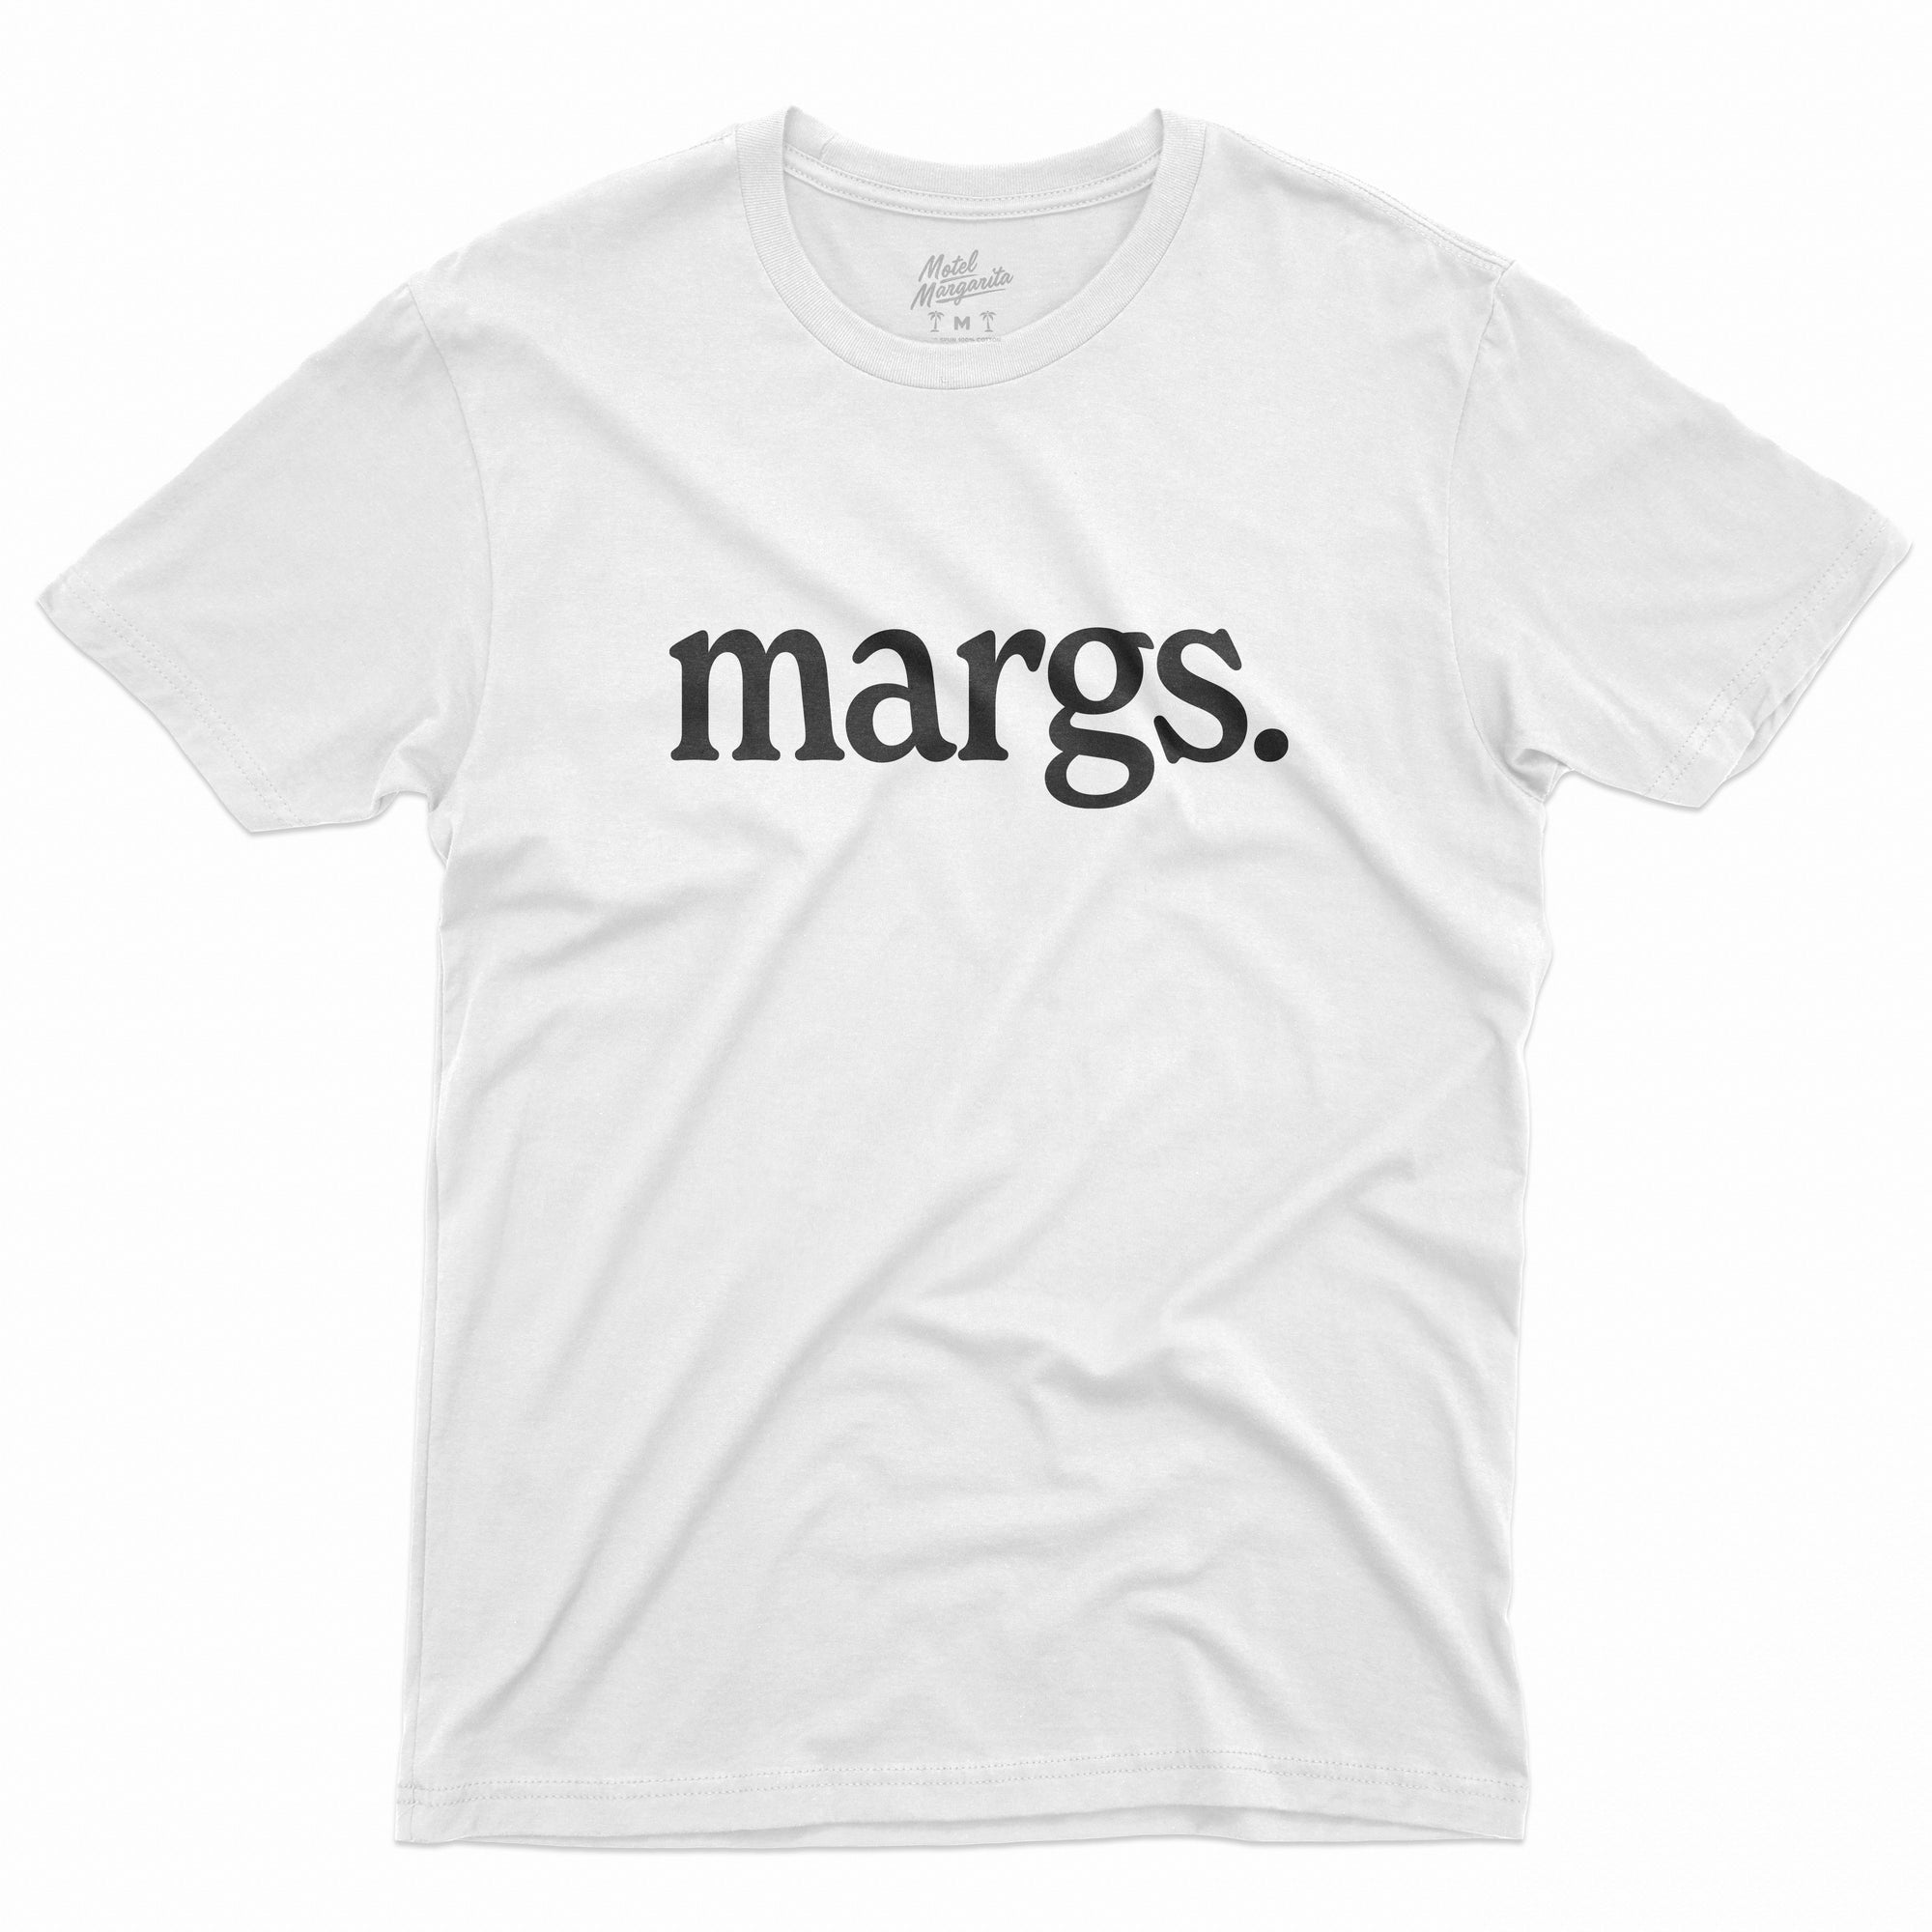 Margs. Tee - White